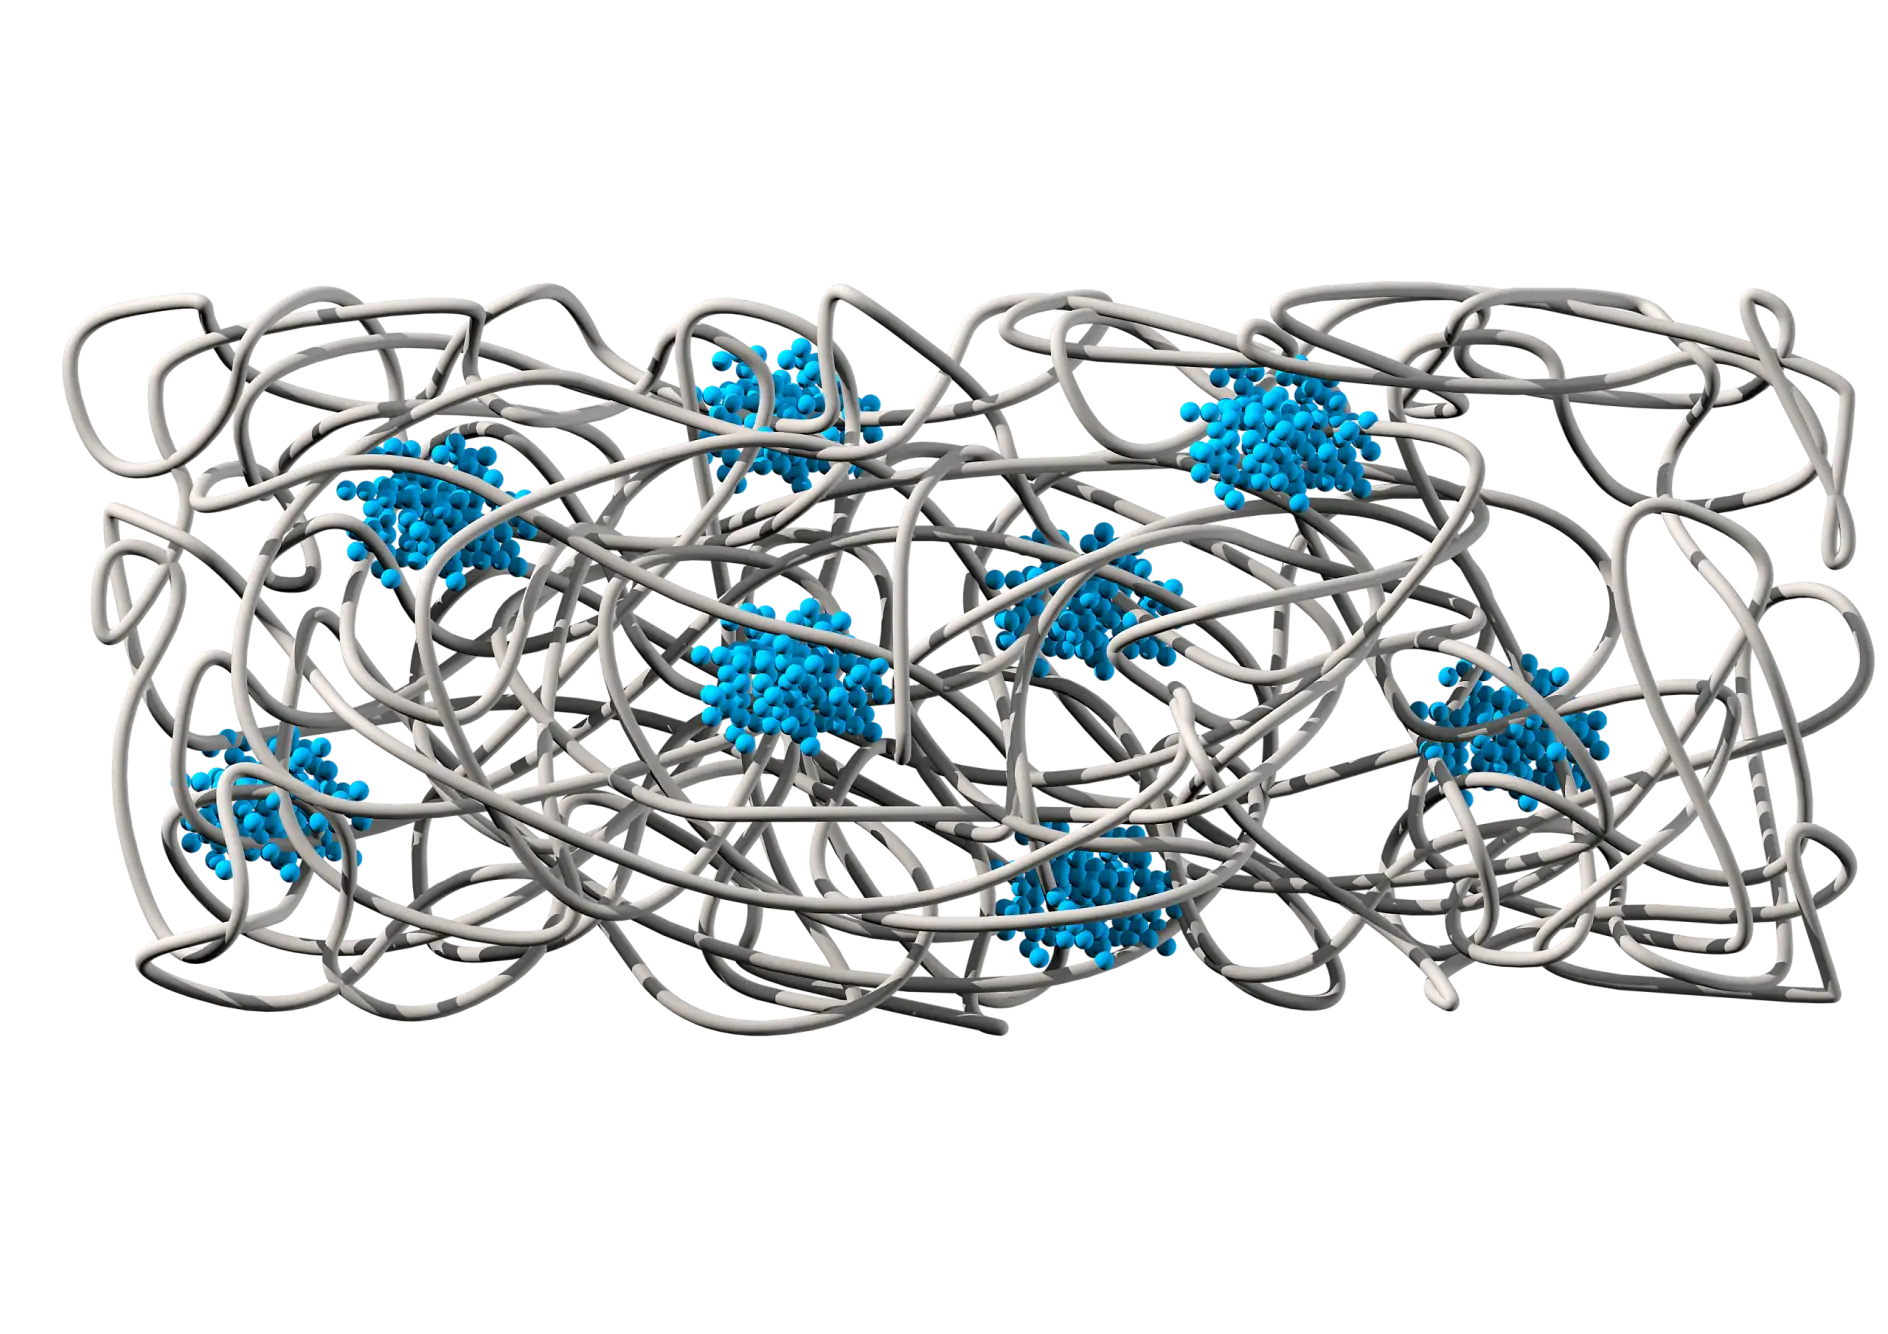 Keemiline struktuur näitab kummimaatriksit (hall), mis tagab adhesiooni ja elastsuse. Ja polüstüreeni domeenid (sinine) tagavad täiendava kohesiooni ja rebenemiskindluse.